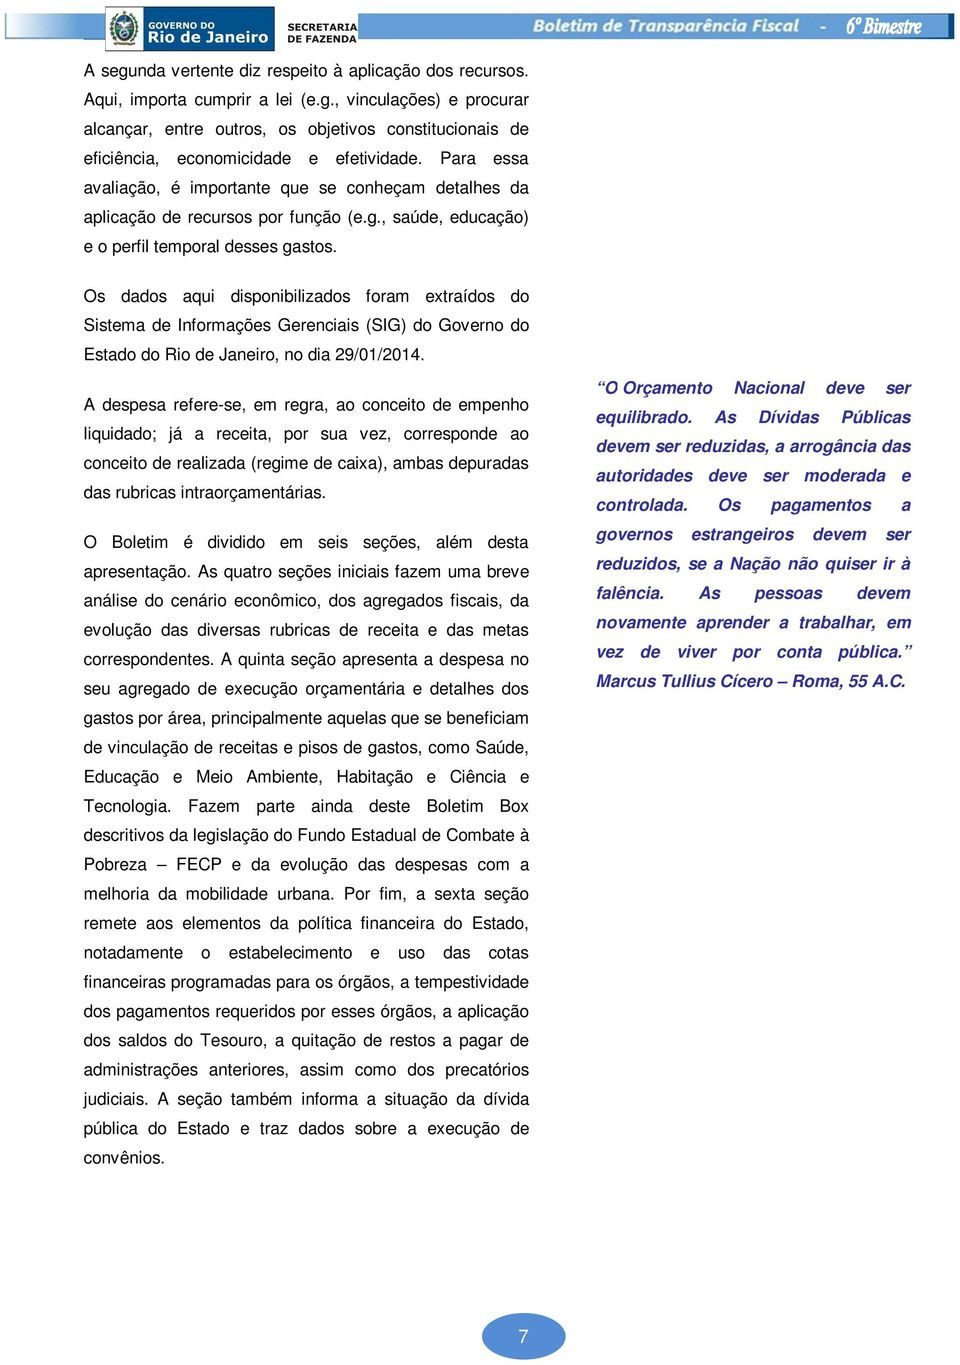 Os dados aqui disponibilizados foram extraídos do Sistema de Informações Gerenciais (SIG) do Governo do Estado do Rio de Janeiro, no dia 29/01/2014.